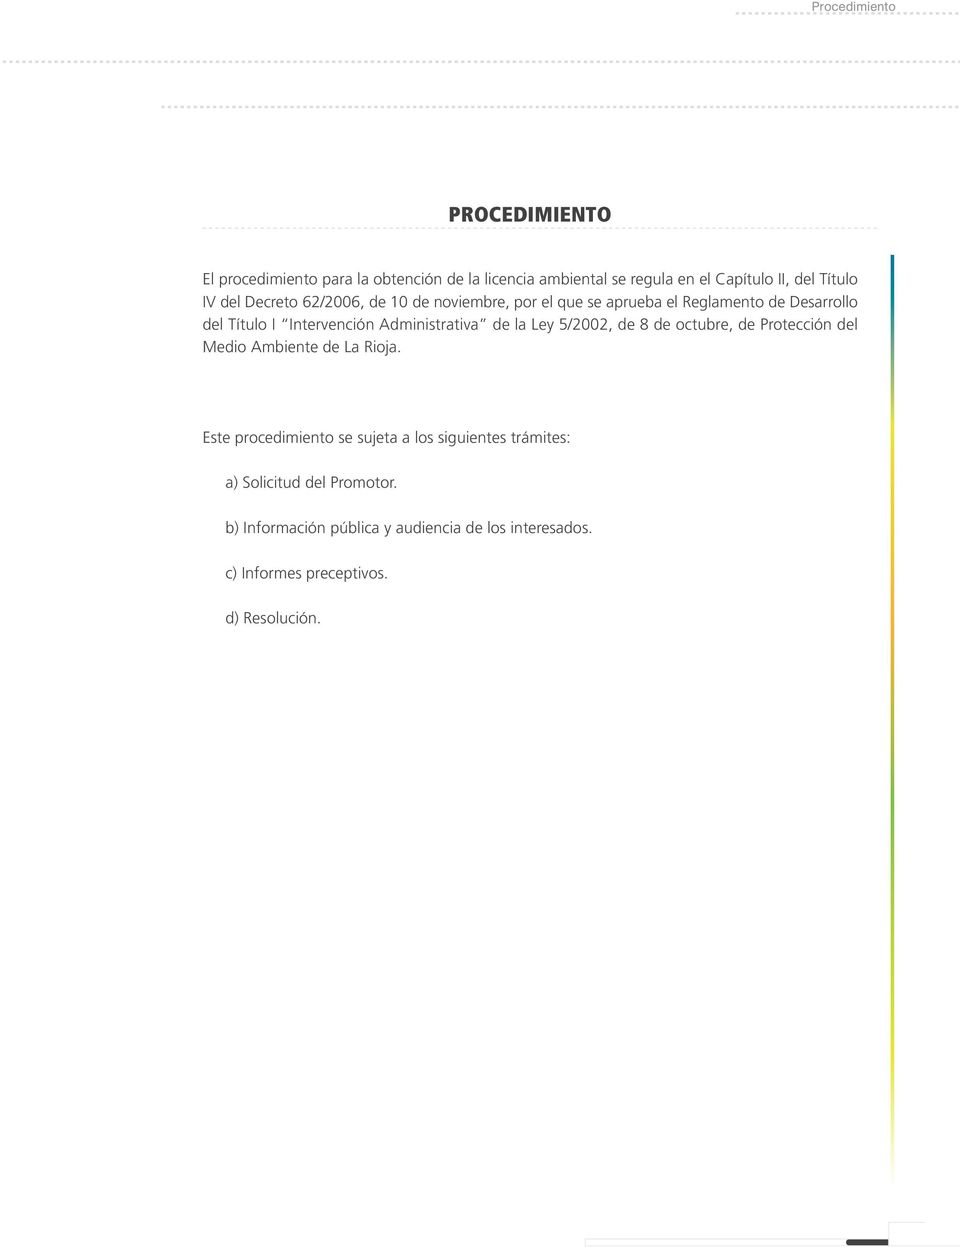 Administrativa de la Ley 5/2002, de 8 de octubre, de Protección del Medio Ambiente de La Rioja.